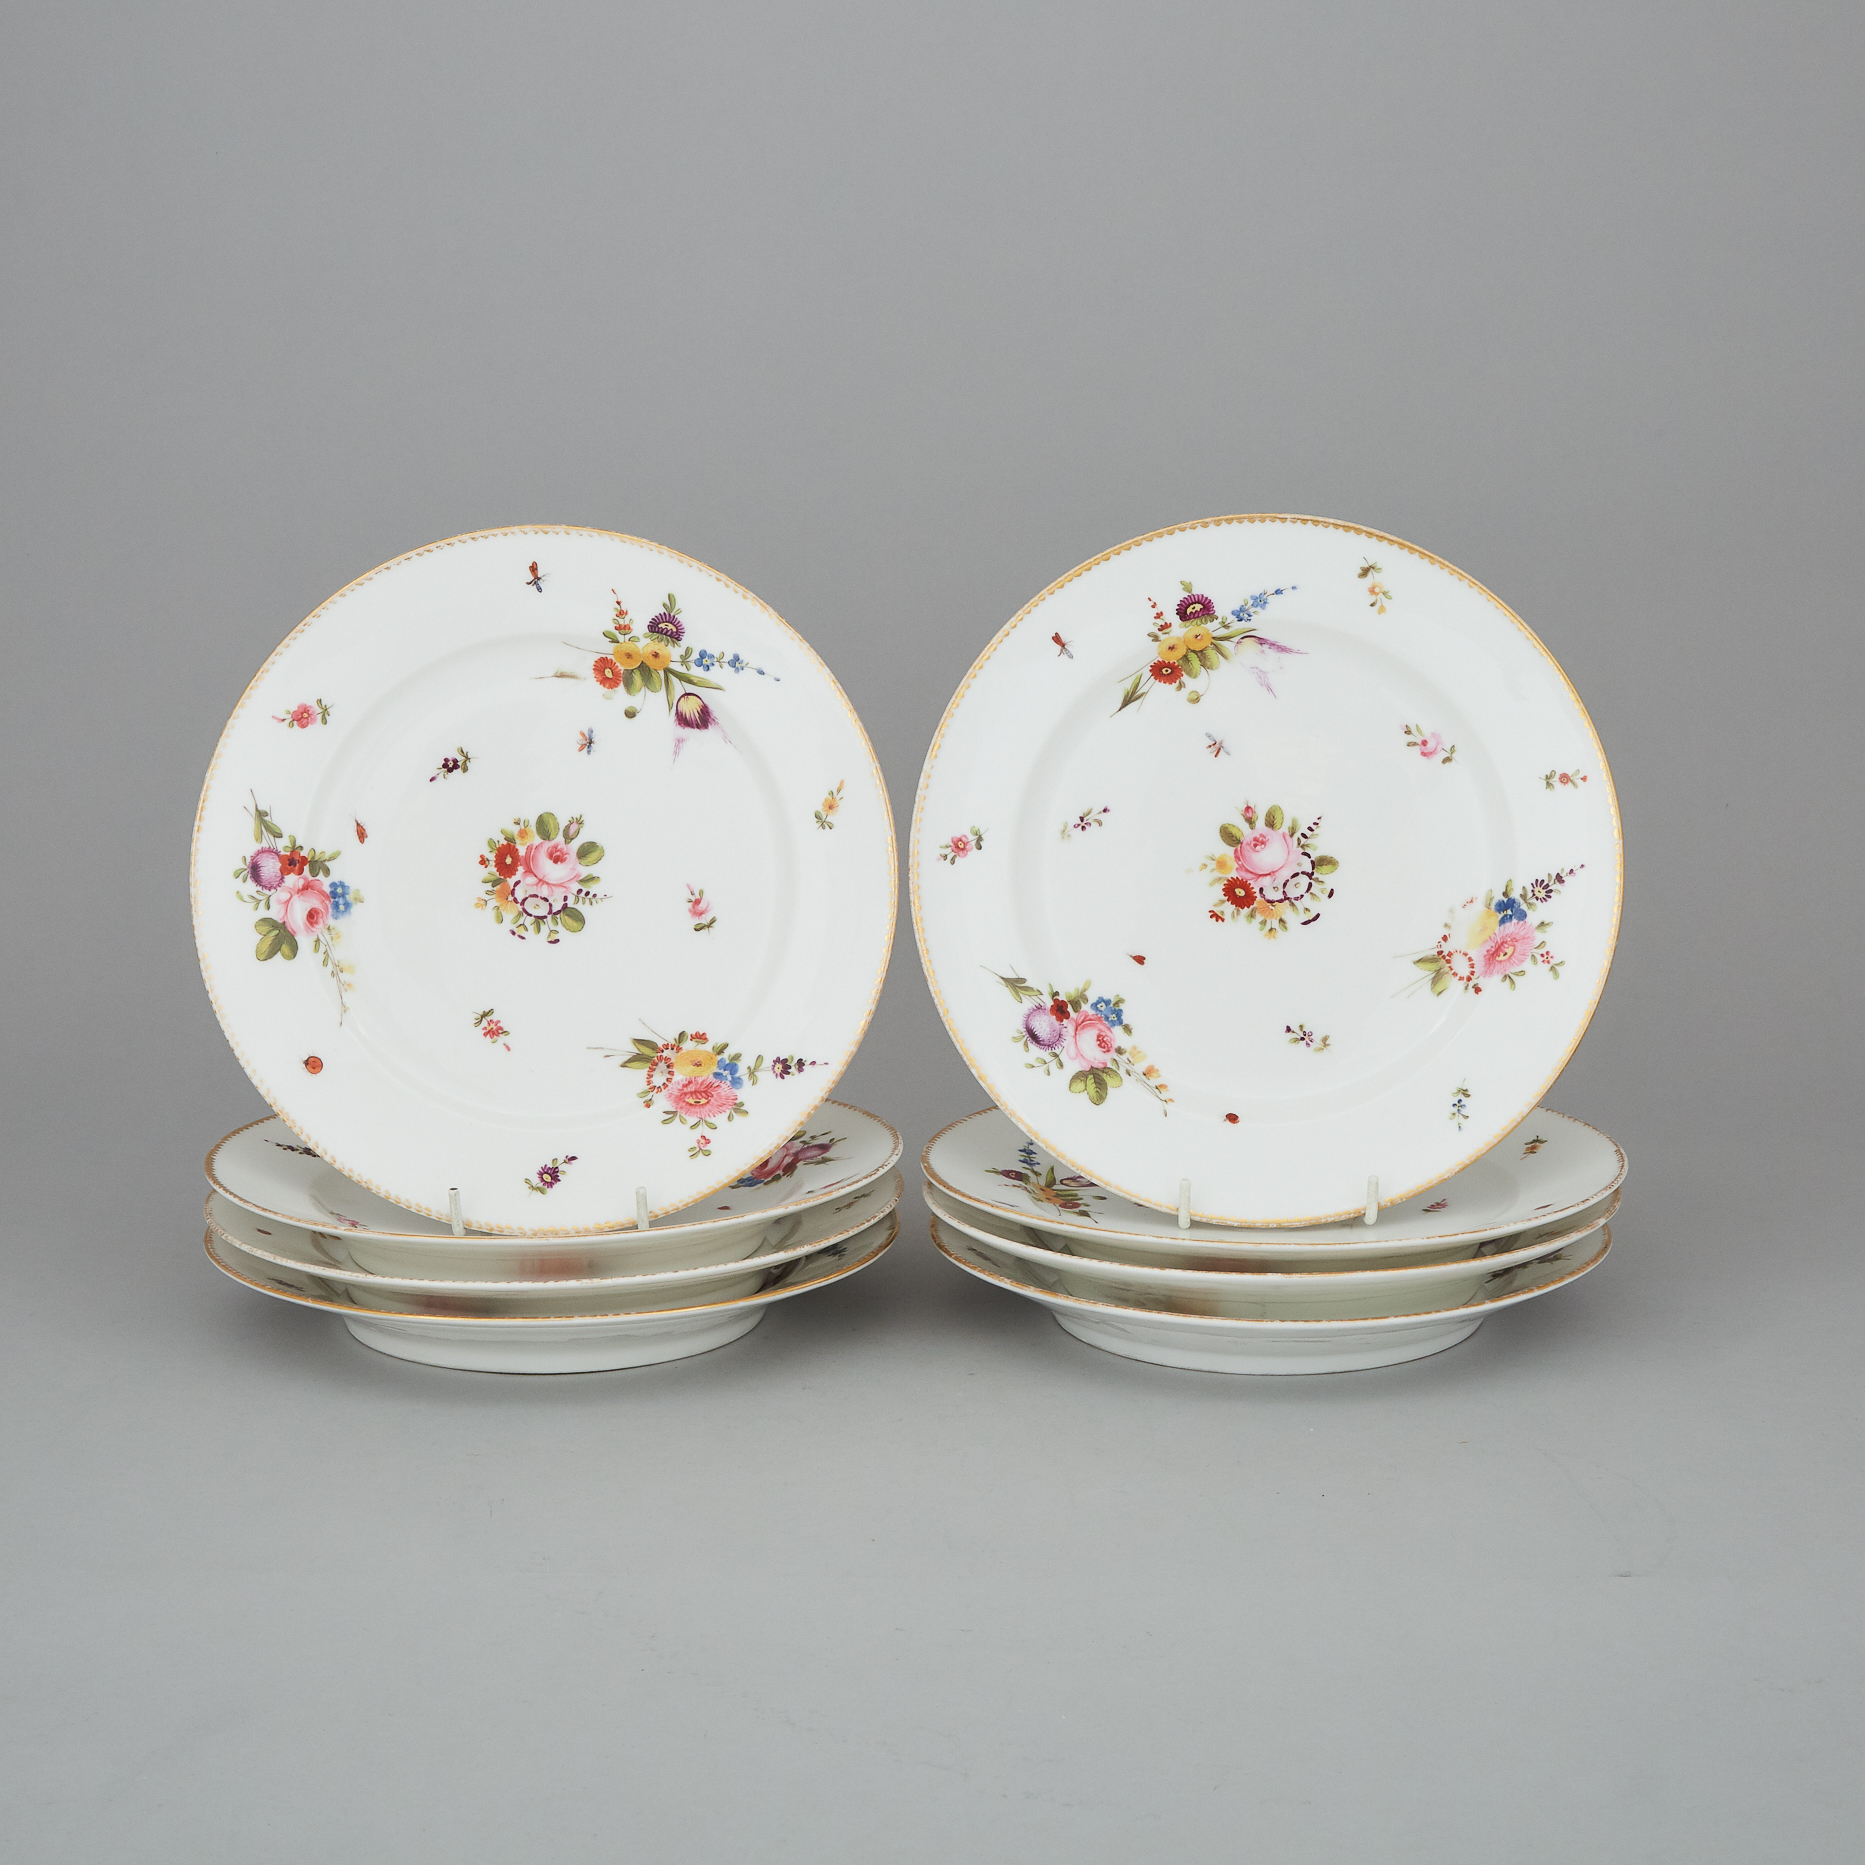 Eight Paris Porcelain Plates, 19th century